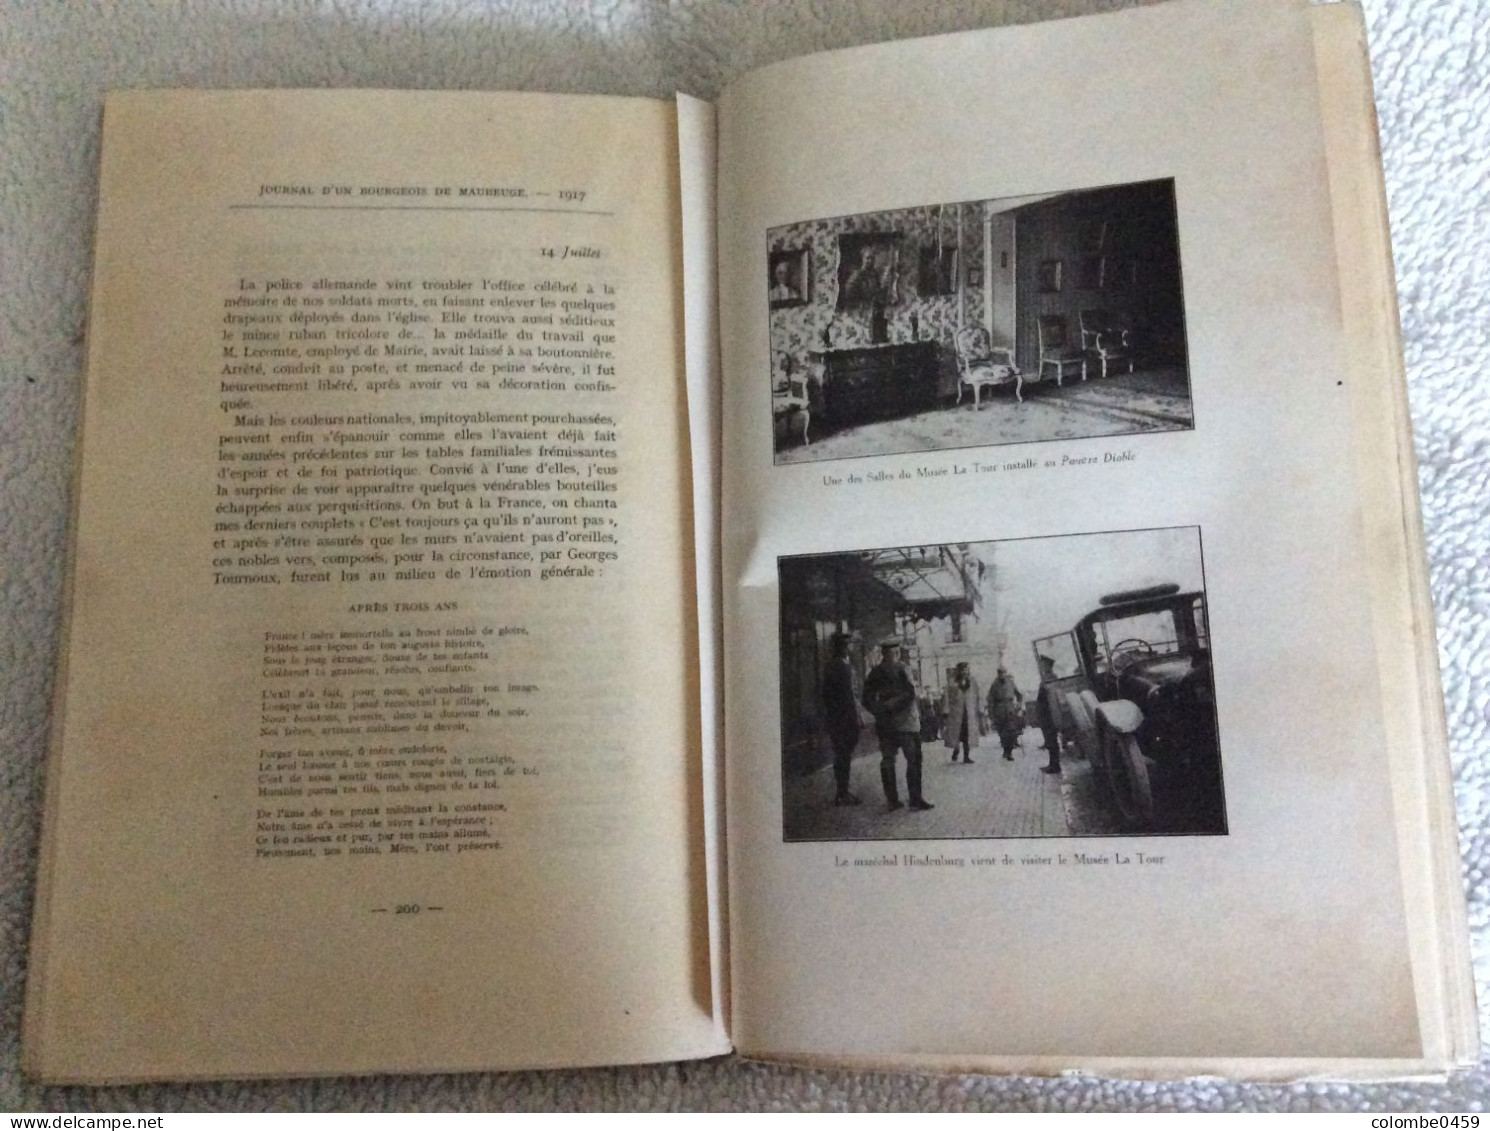 Ancien livre "Journal d'un Bourgeois de Maubeuge Avant pendant le Siège et l'Occupation Allemande 1914-1918